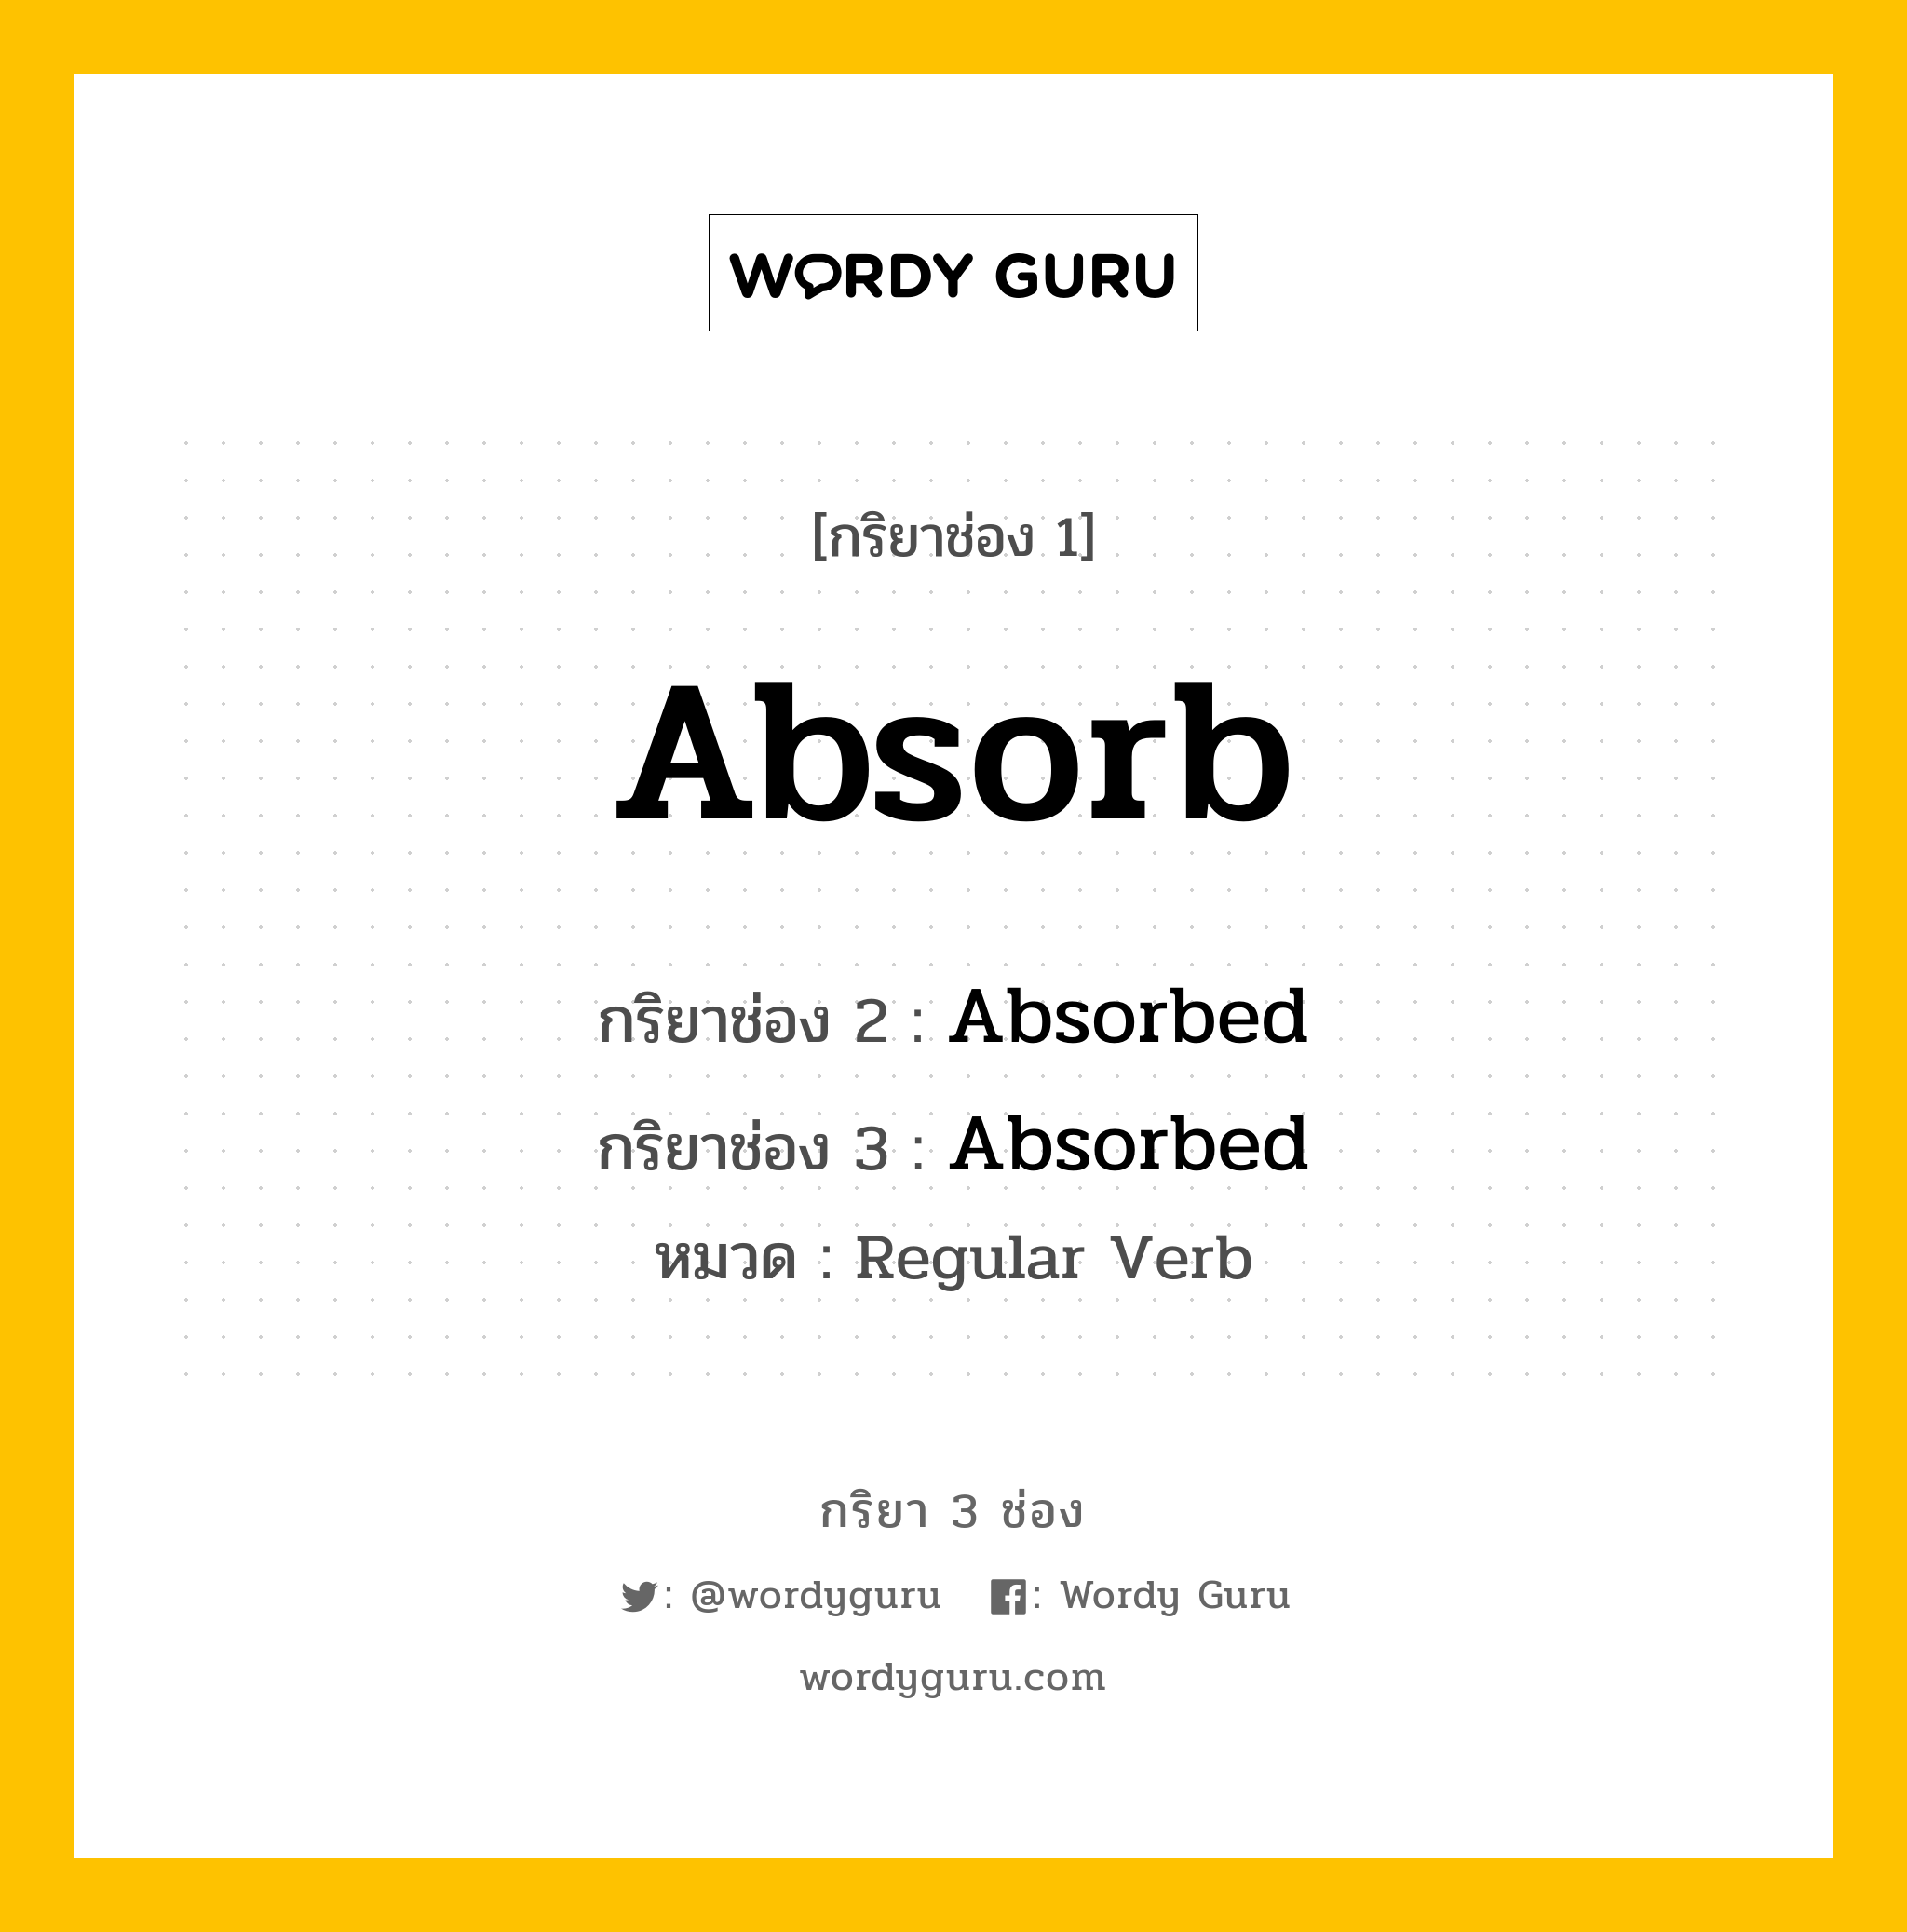 Absorb มีกริยา 3 ช่องอะไรบ้าง? คำศัพท์ในกลุ่มประเภท Regular Verb, กริยาช่อง 1 Absorb กริยาช่อง 2 Absorbed กริยาช่อง 3 Absorbed หมวด Regular Verb หมวด Regular Verb